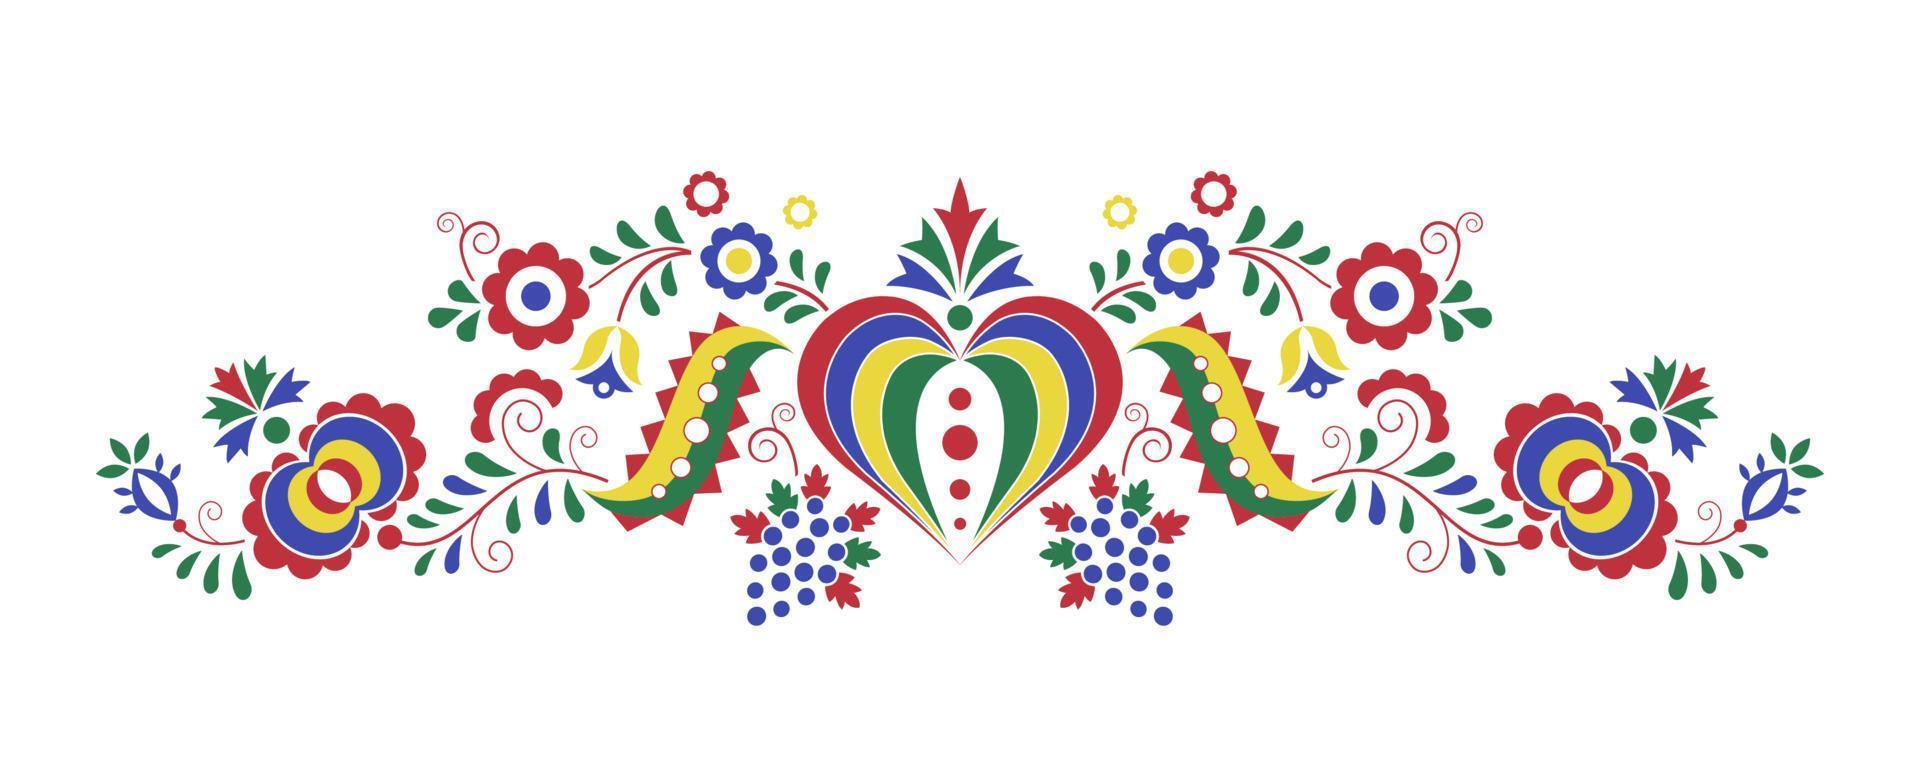 ornement folklorique traditionnel. ornement tchèque de la région podluzi. symbole décoratif de broderie florale isolé sur fond blanc. illustration vectorielle vecteur